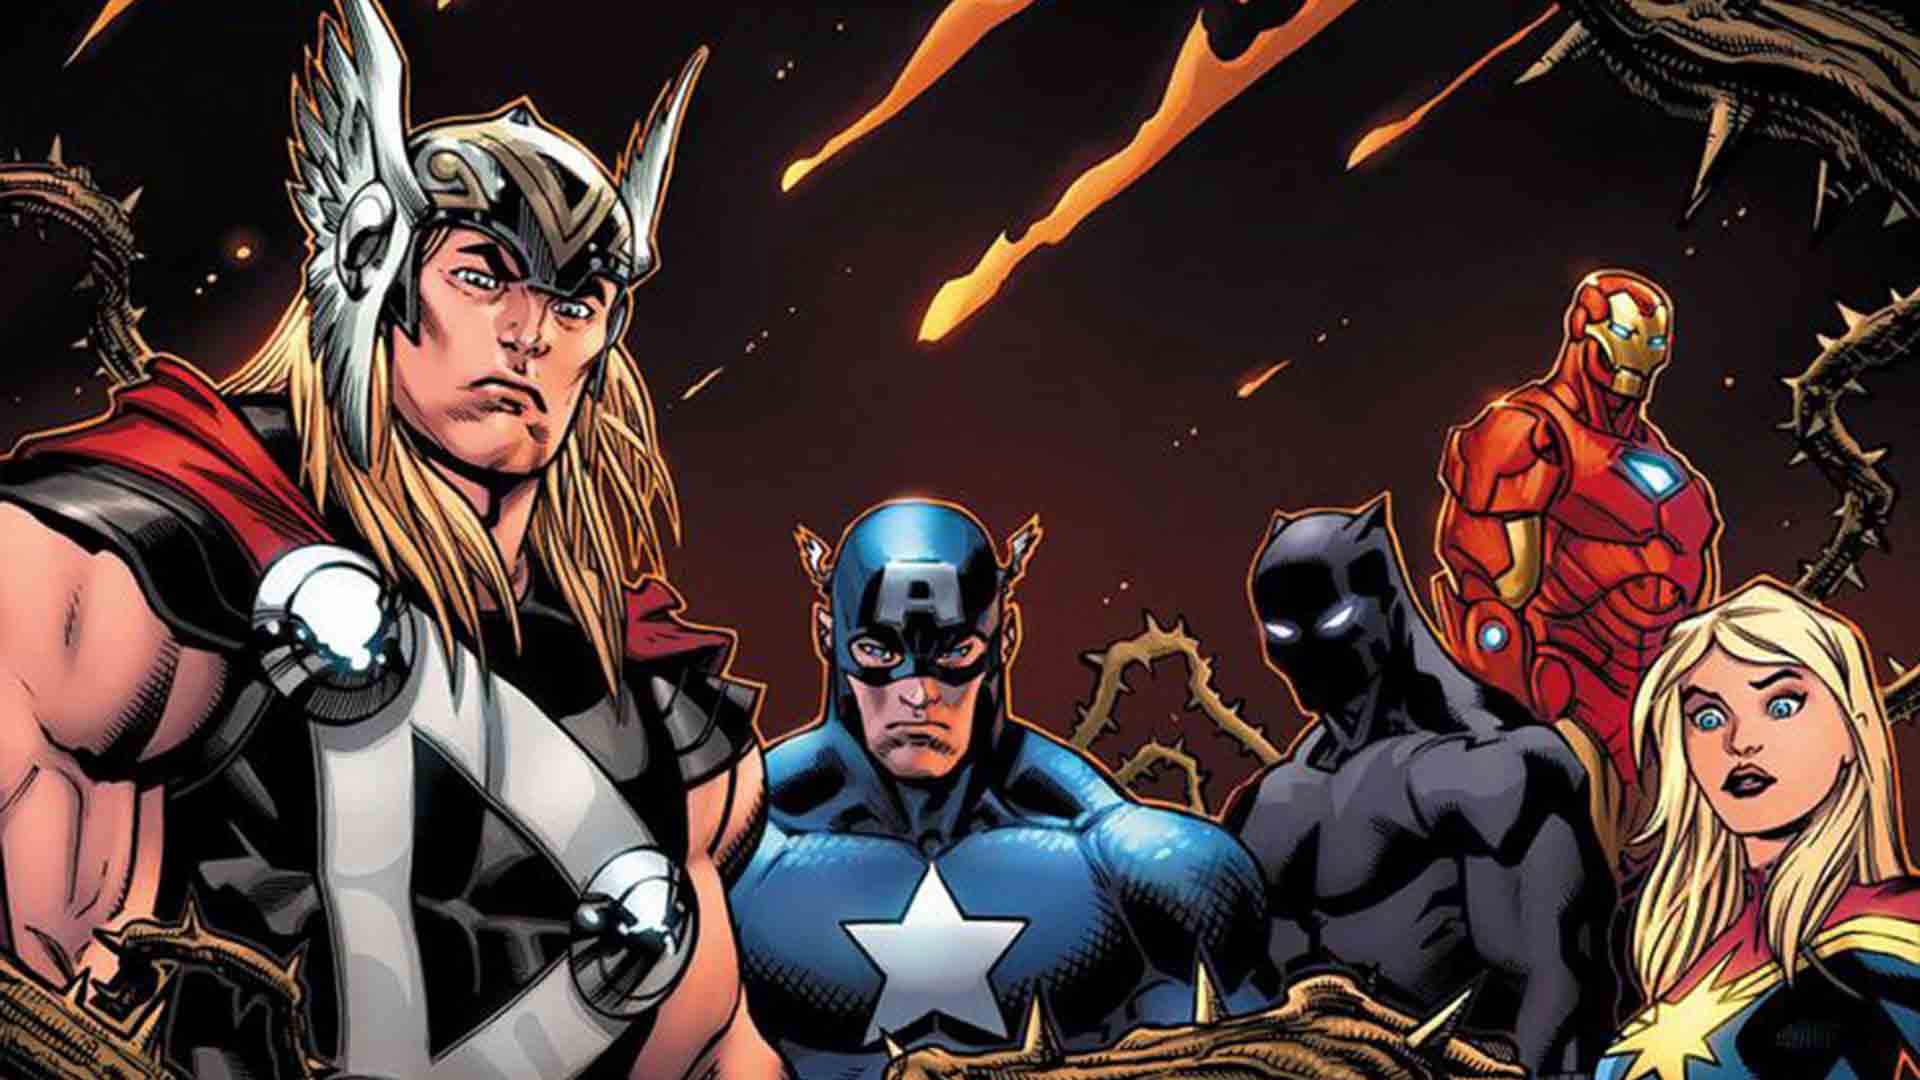 مارول کامیکس در سری کتاب کمیک Avengers از رویداد مرموز جدید خود خبر داد